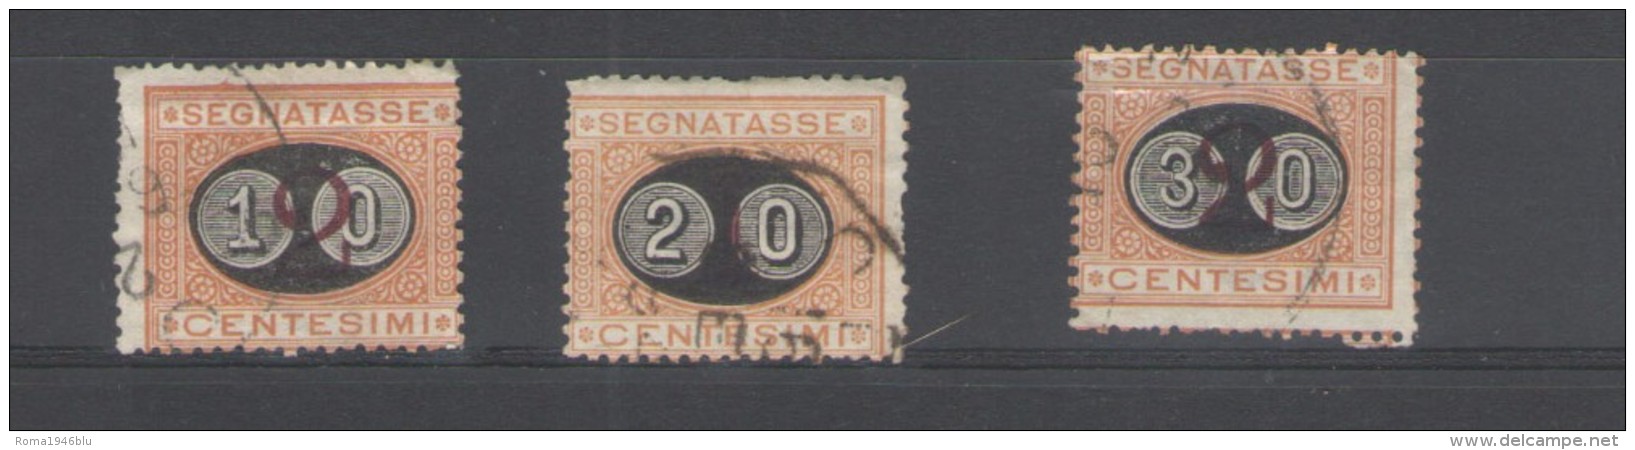 REGNO 1890 SEGNATASSE SERIE CPL. ANNULLATA - Portomarken